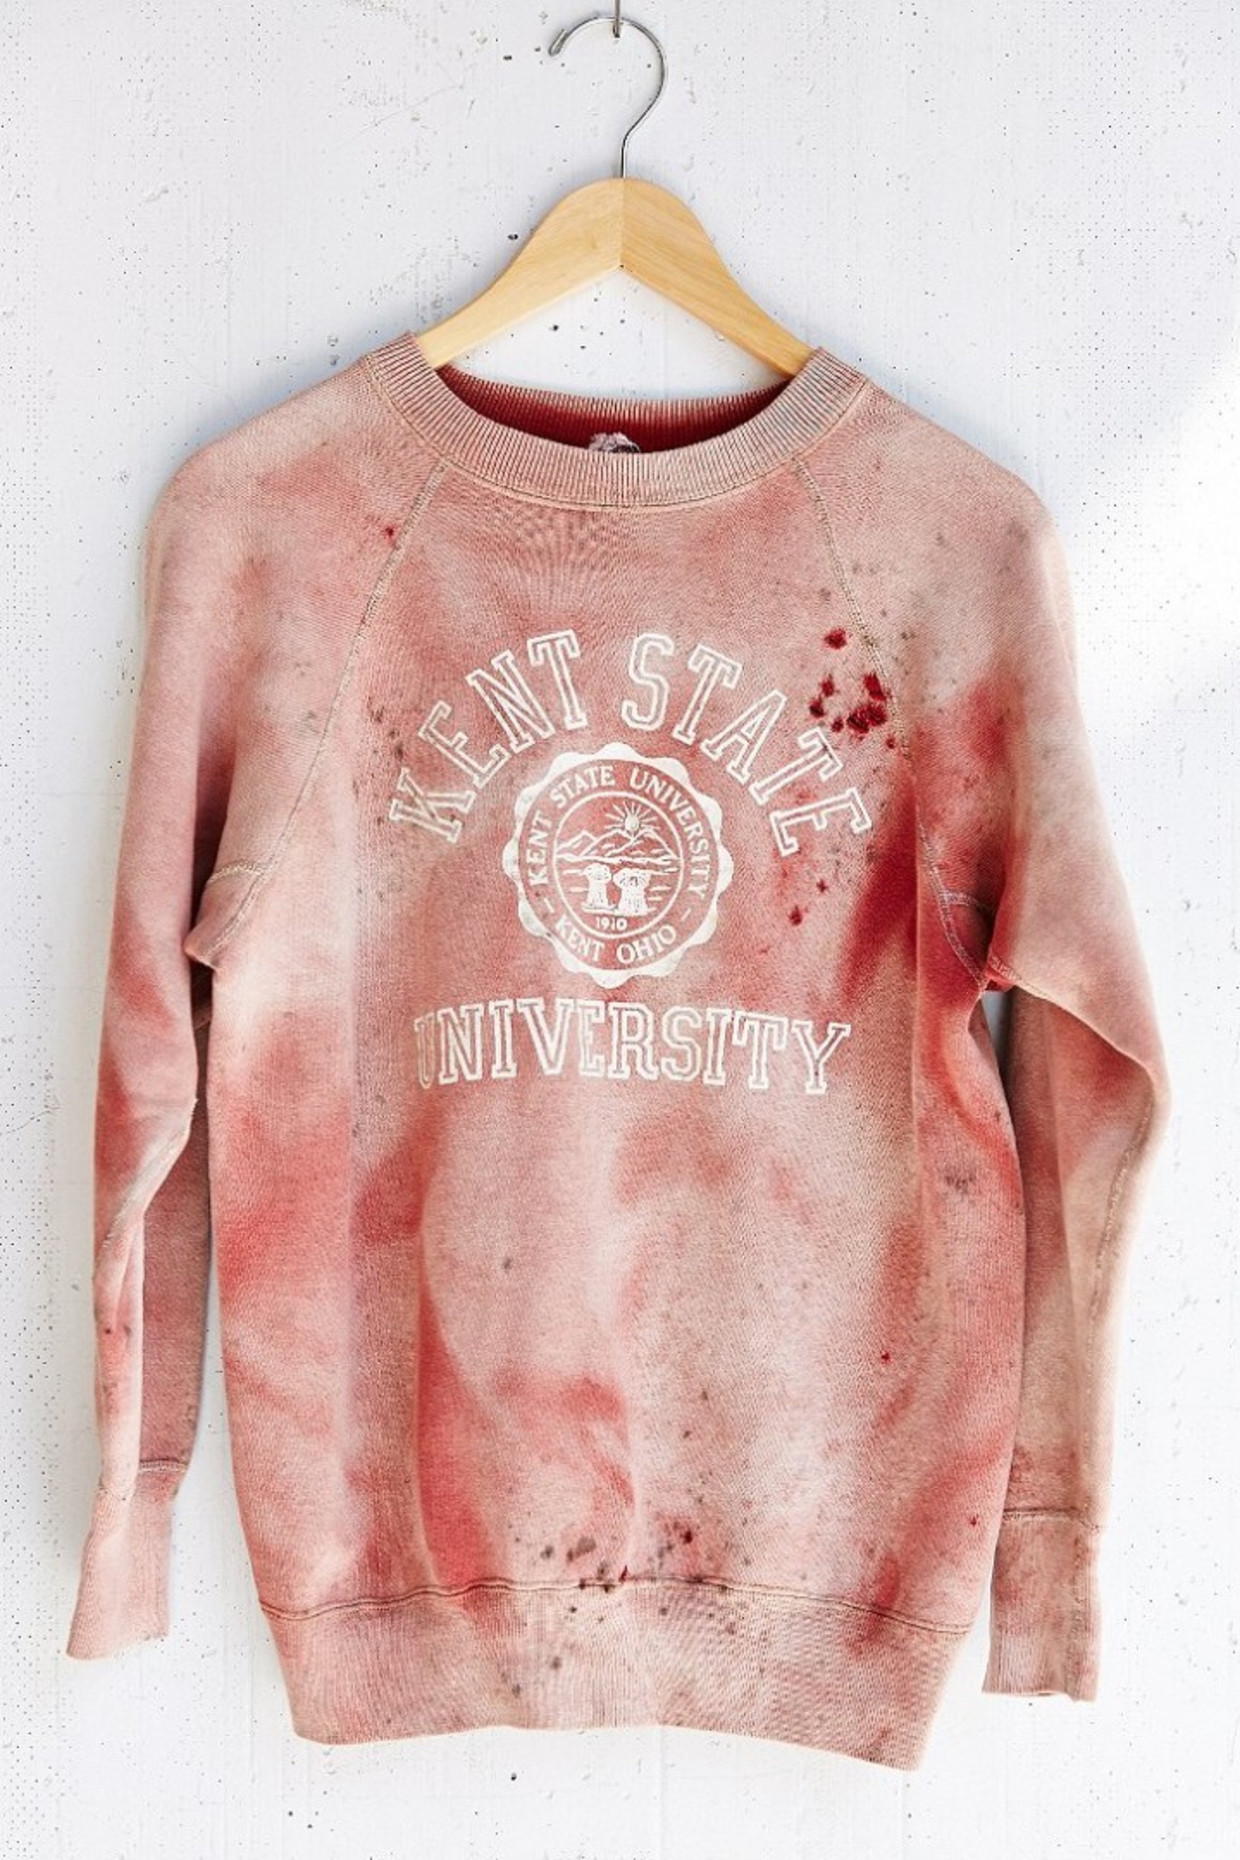 Het met bloed bespatte, controversiële shirt dat verwijst naar de bloederige 'Kent State Shootings' in 1970 Beeld Screenshot Urban Outfitters